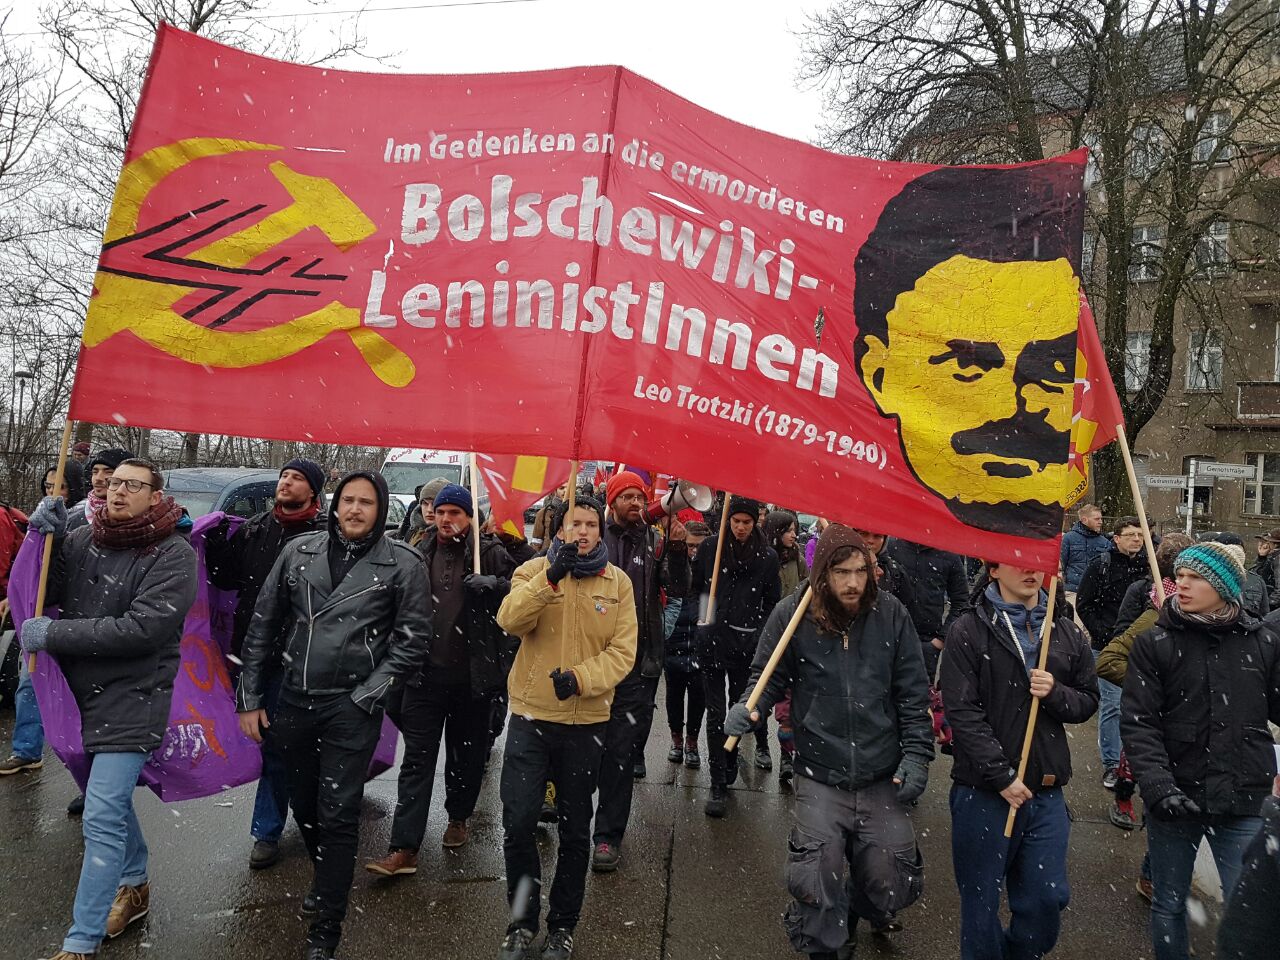 [Fotoreportage] Tausende gedenken Luxemburg, Liebknecht, Lenin und Leo Trotzki